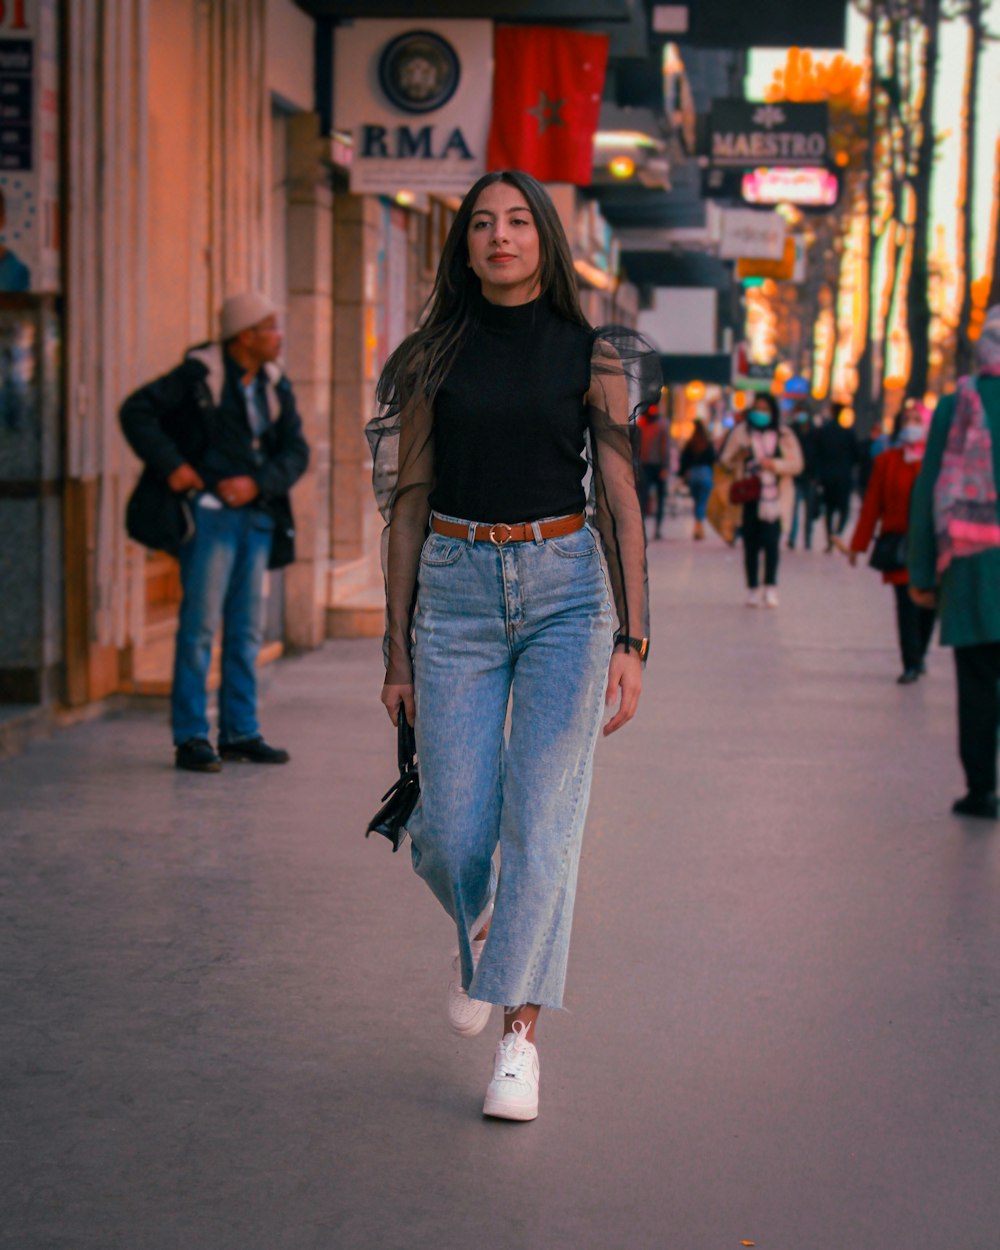 Foto mujer con camisa negra y jeans azules de pie la calle durante el día – Imagen rabat gratis en Unsplash